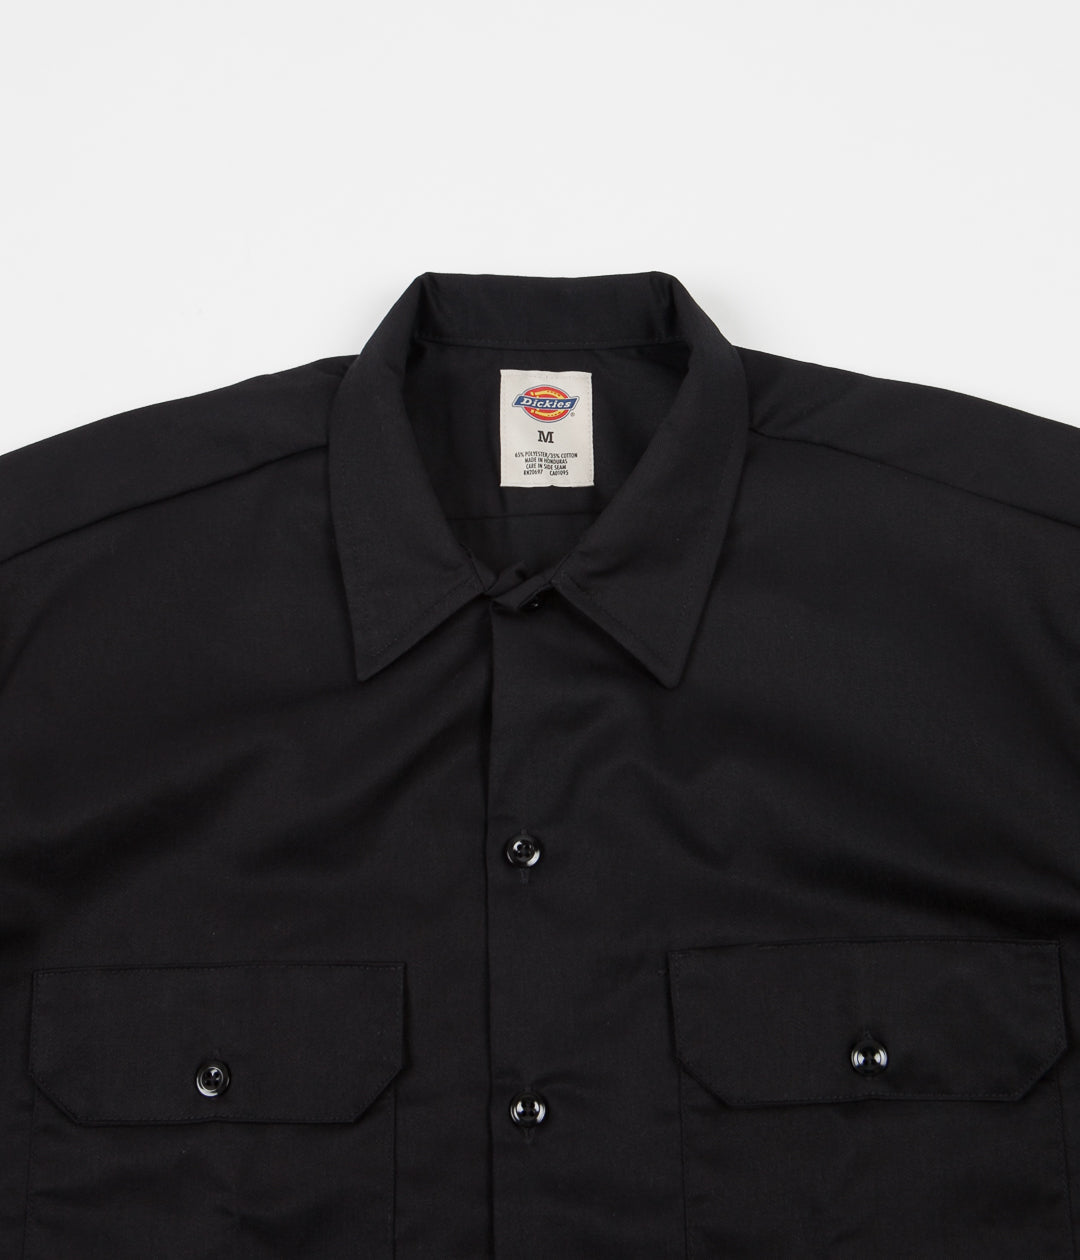 Dickies Short Sleeve Work Shirt Black Flatspot